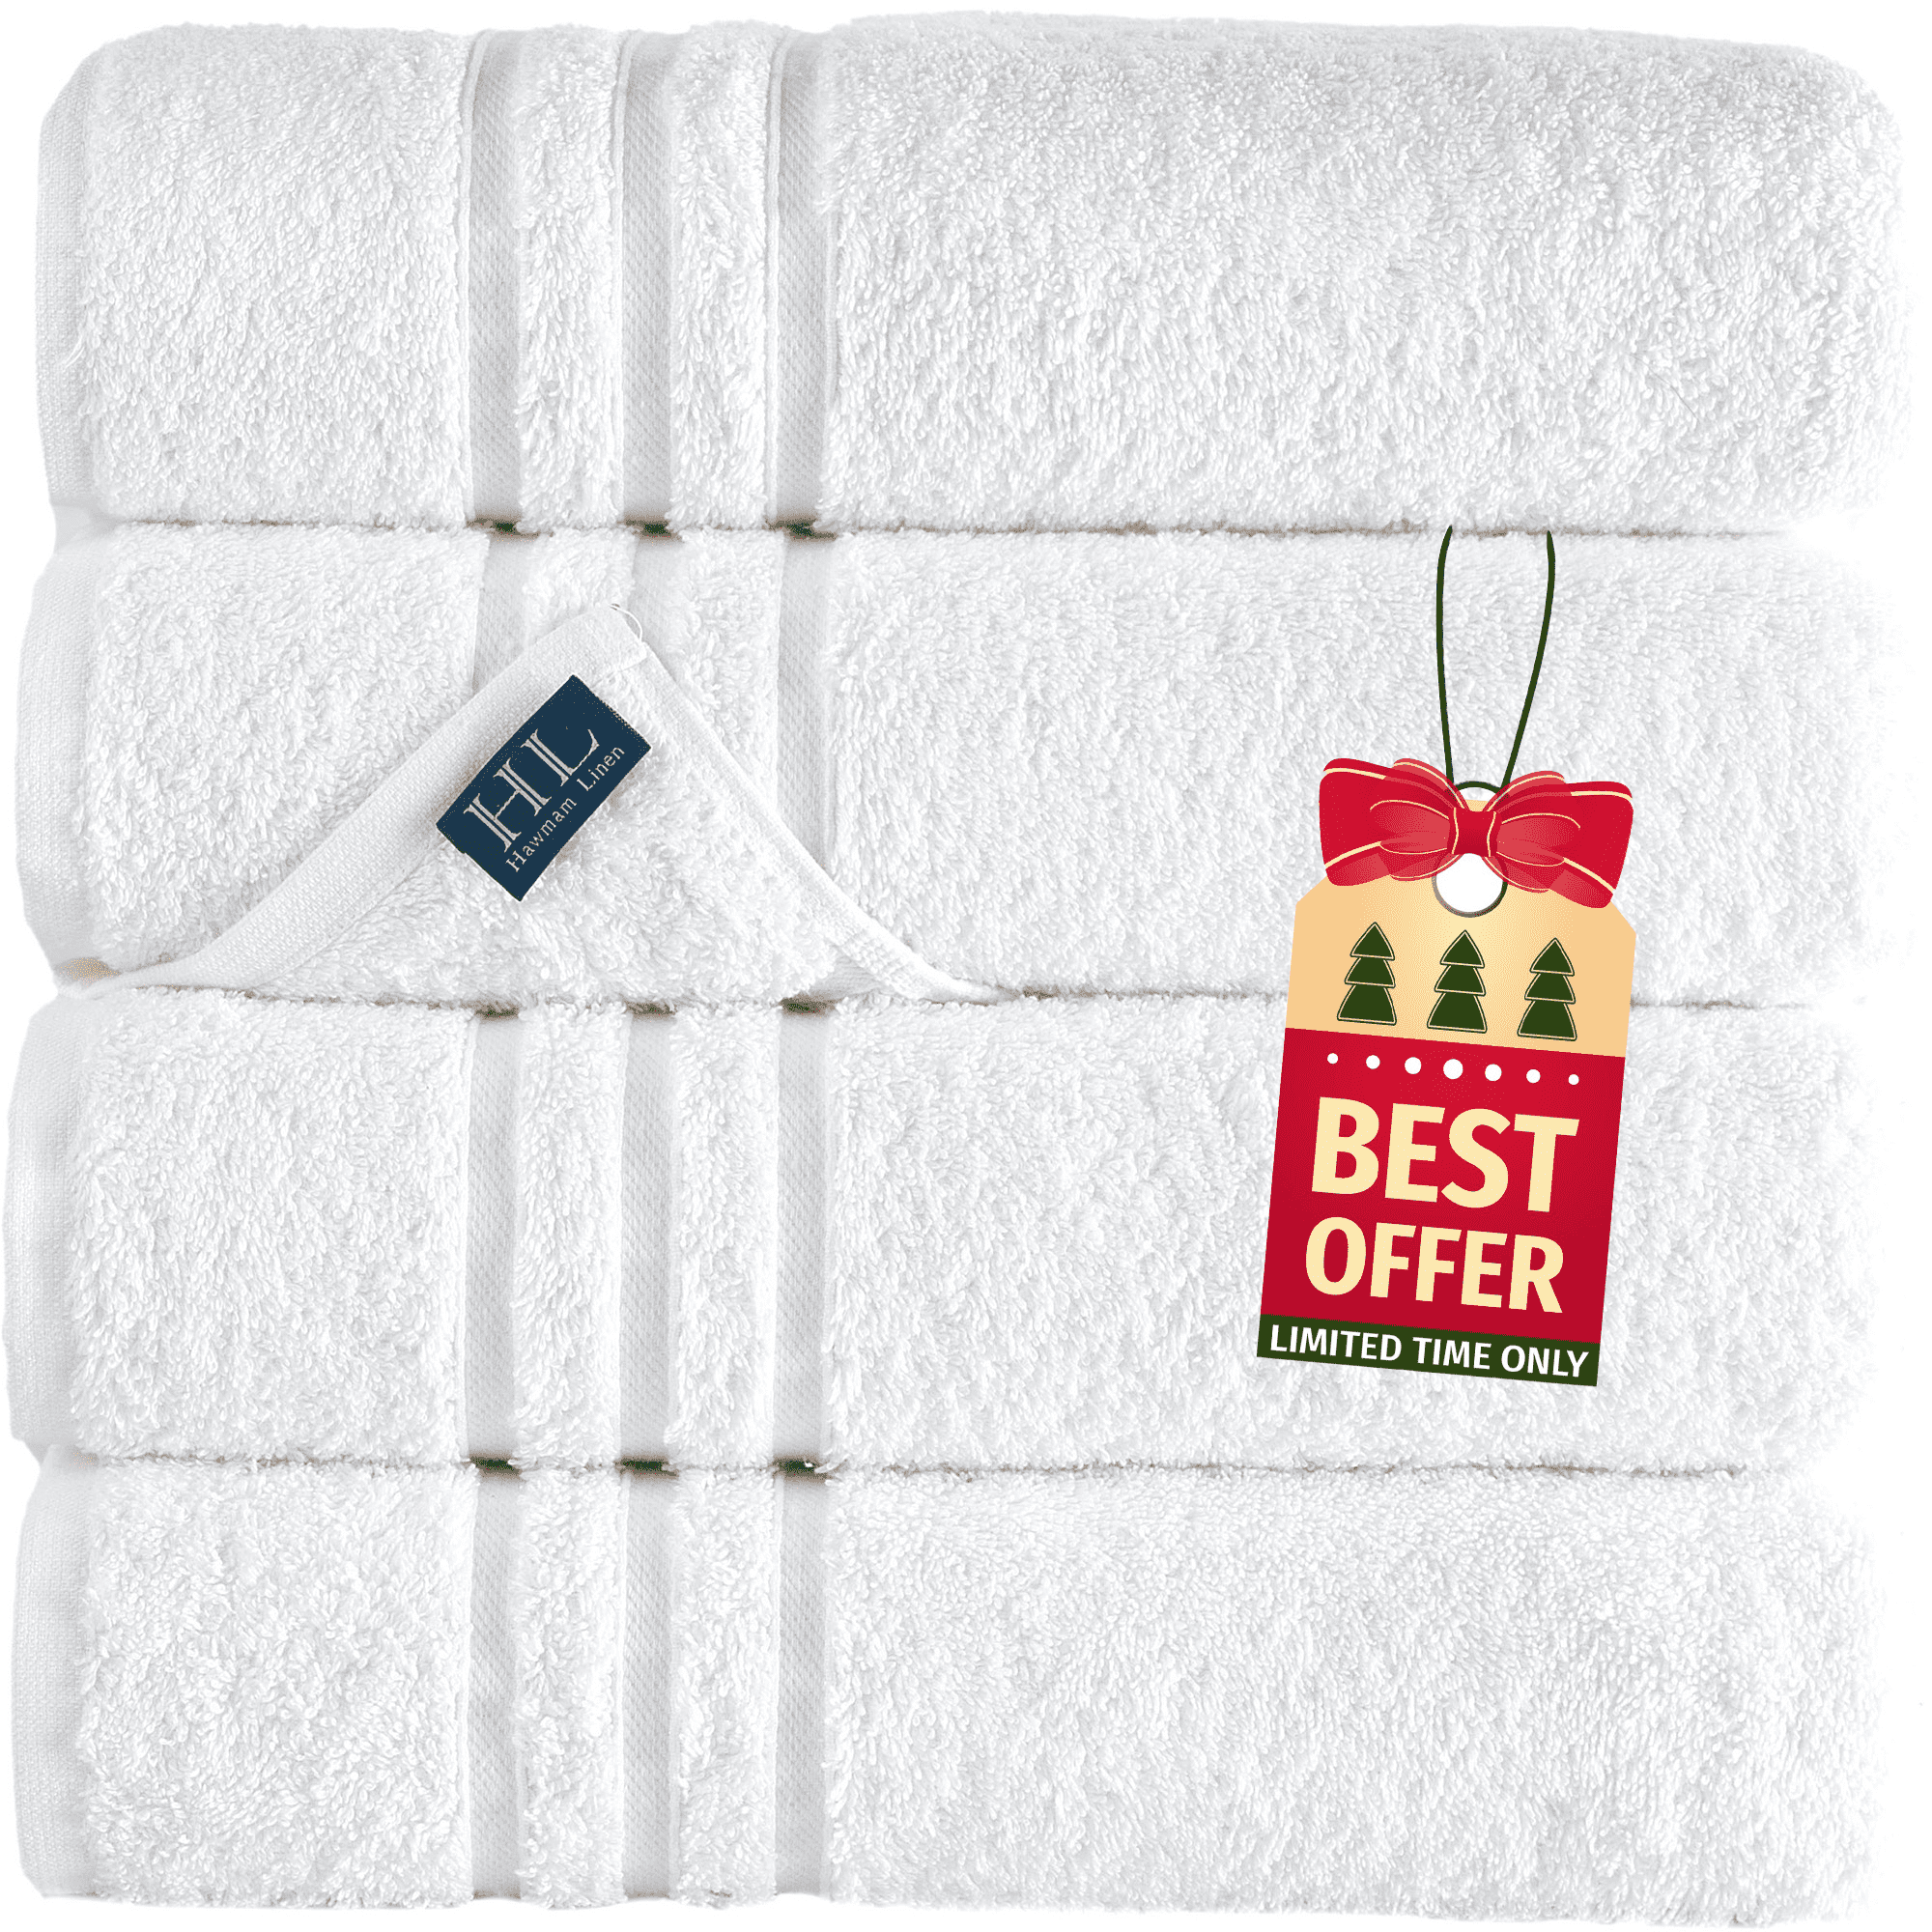 LANE LINEN White Bath Sheets Set-Bath Towels Extra Large, 100% Cotton  Bathroom Towels, 4 Pack Bath Towel Set, Spa Quality Large Bath Towels for